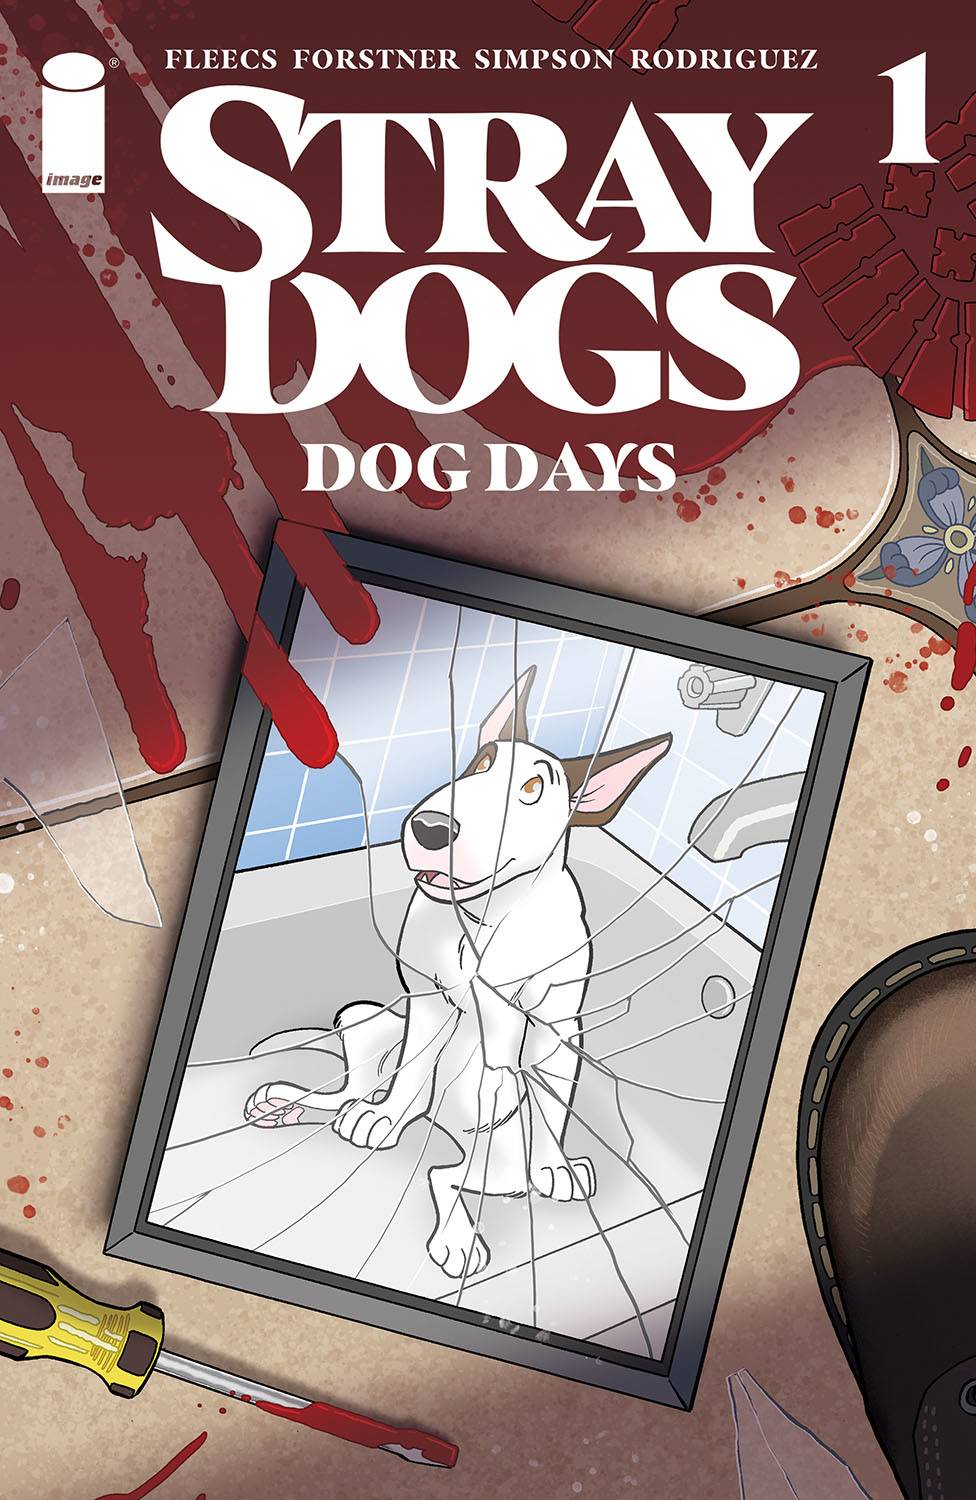 STRAY DOGS DOG DAYS #1 (OF 2) CVR A FORSTNER & FLEECS 💎🤮